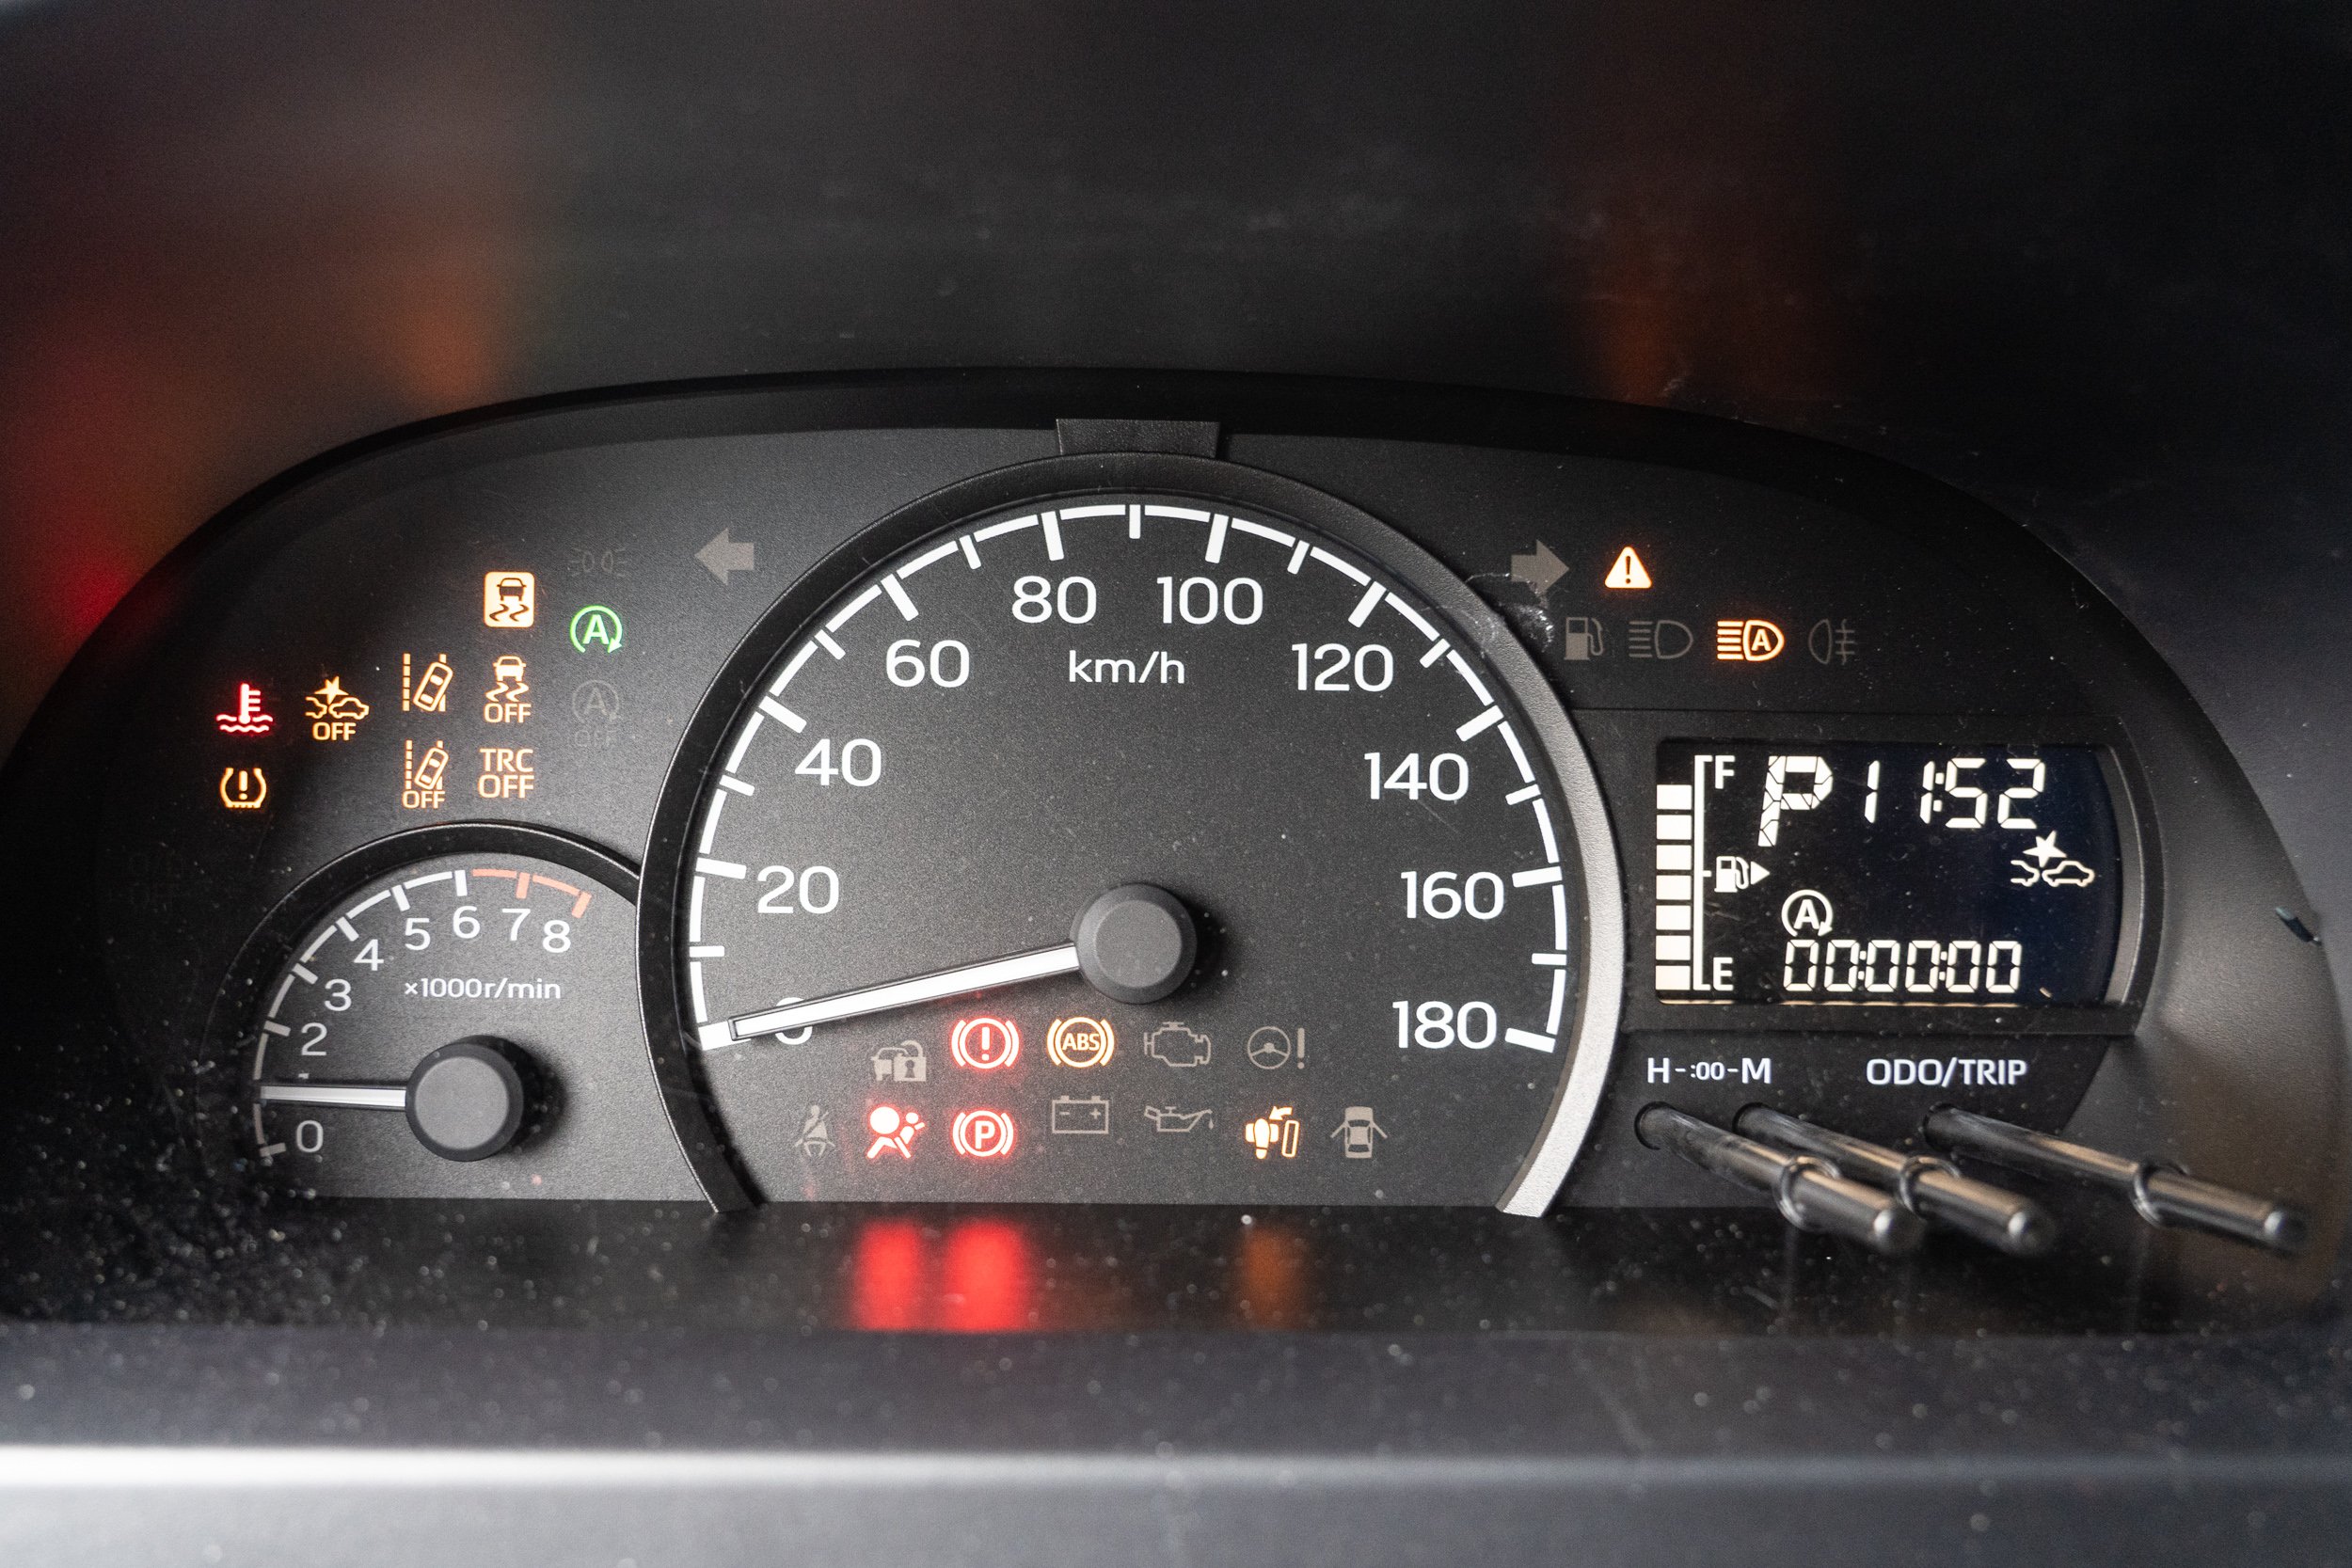 傳統指針式儀表為主，右側則安排數位儀表顯示相關行車資訊。